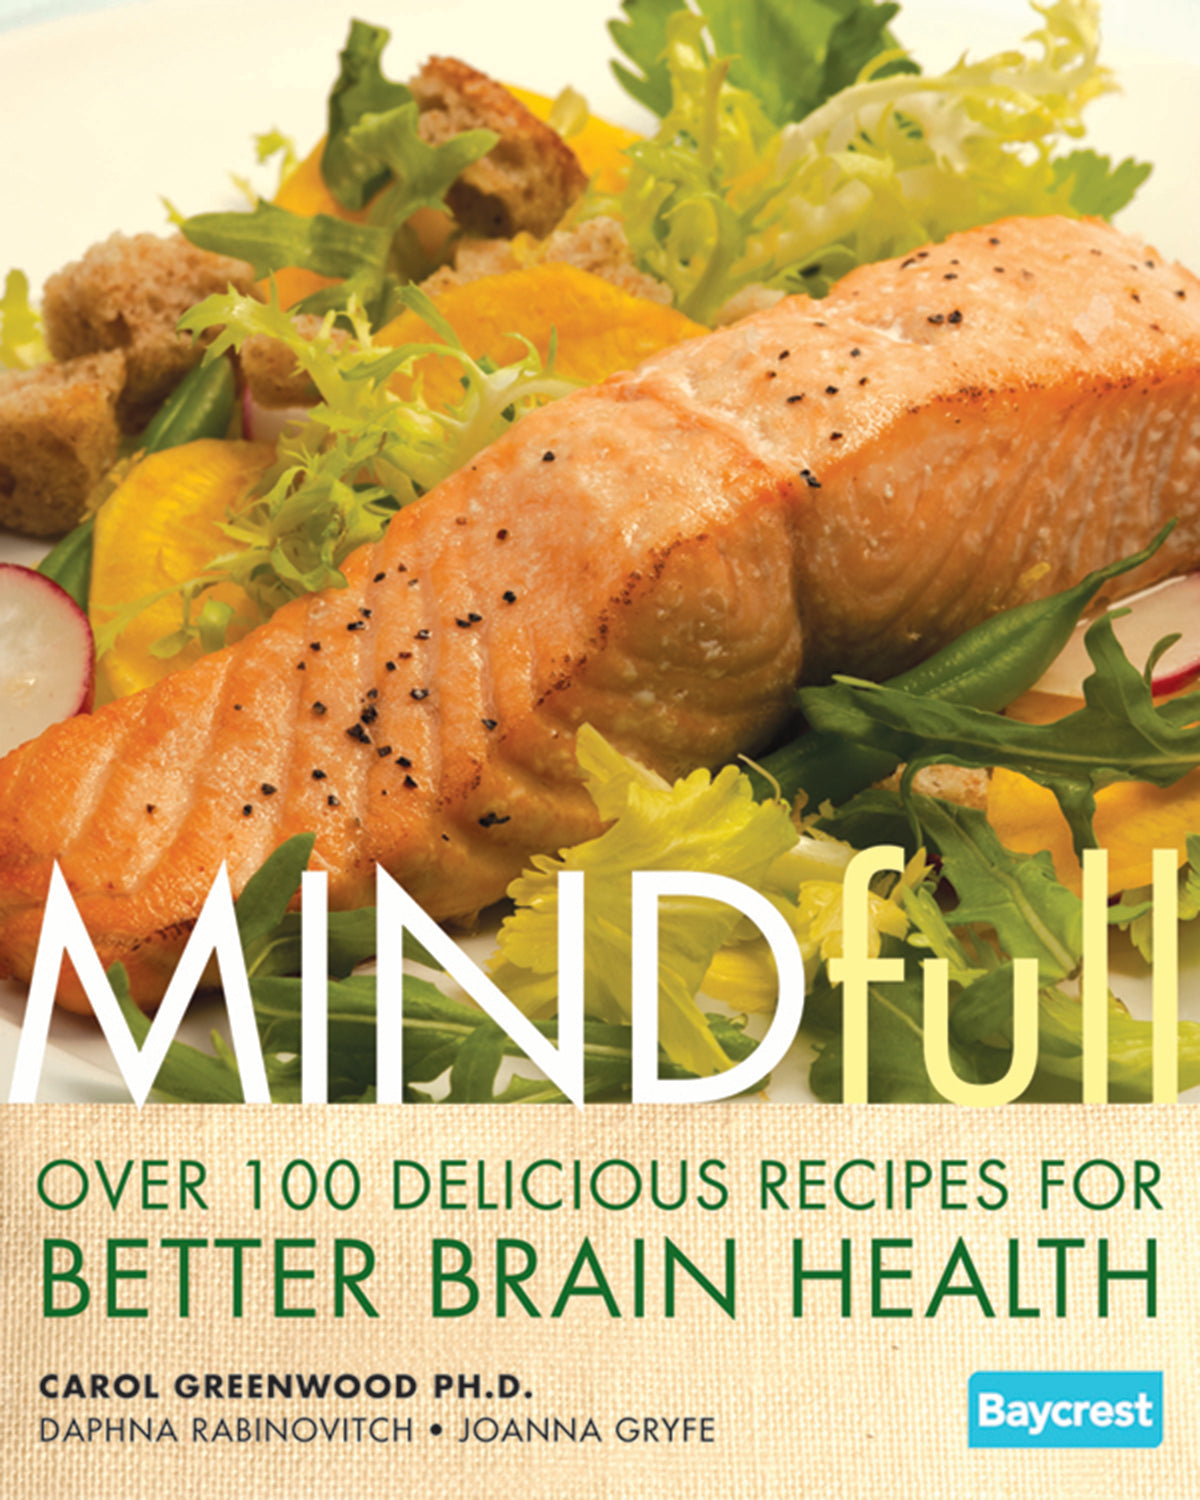 Mindfull Cookbook